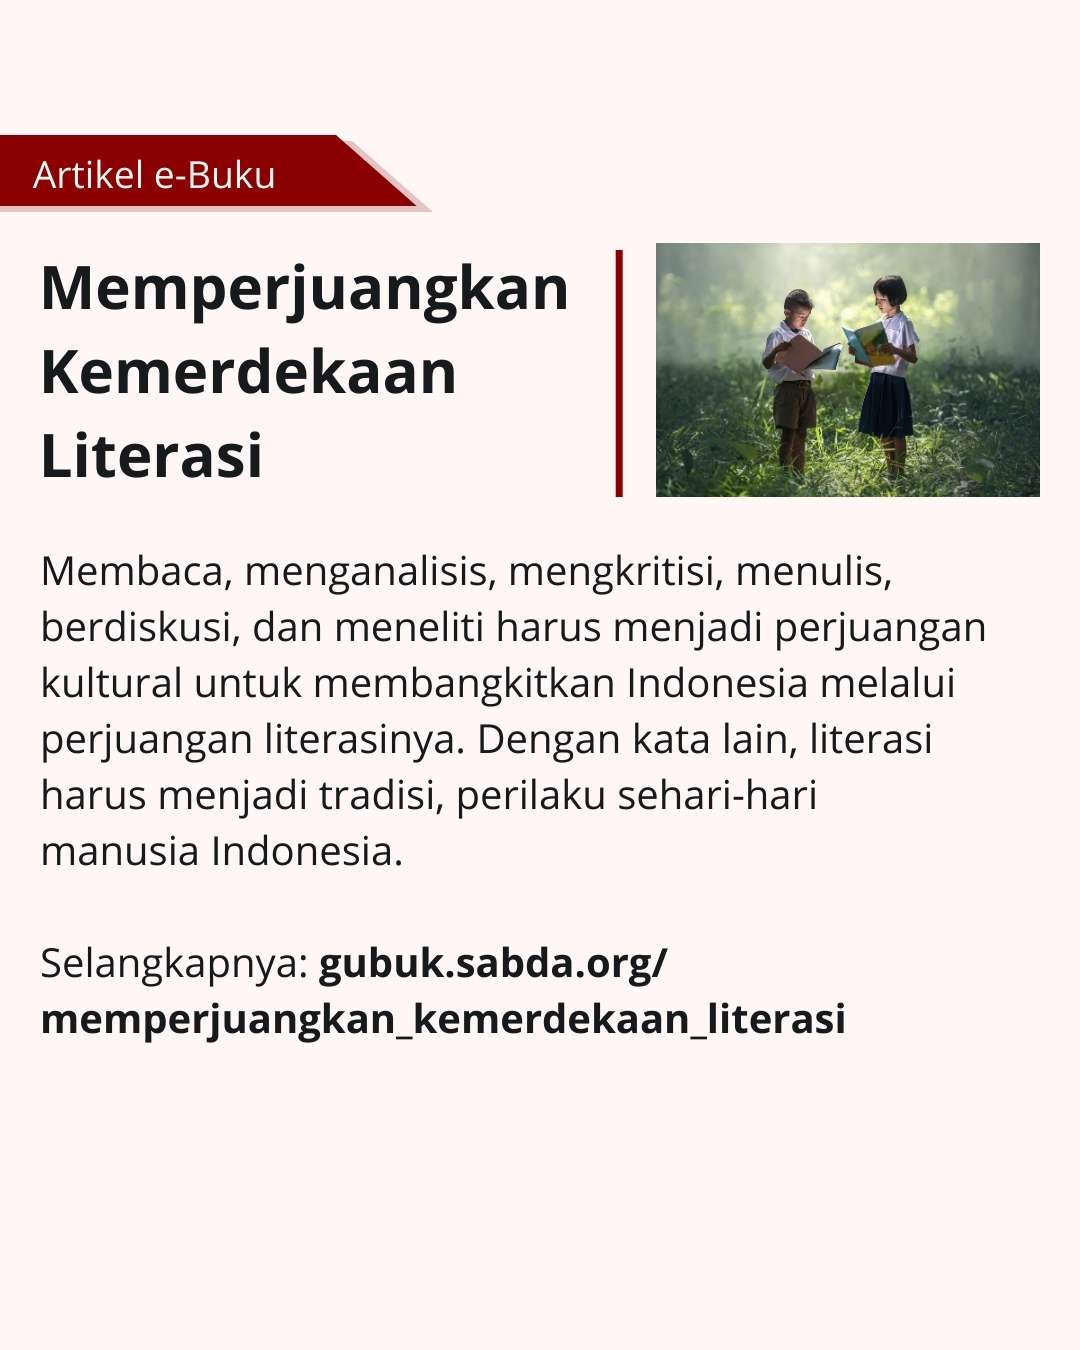 Indonesia harus memperjuangkan kemerdekaan literasi demi kemajuan bangsa.